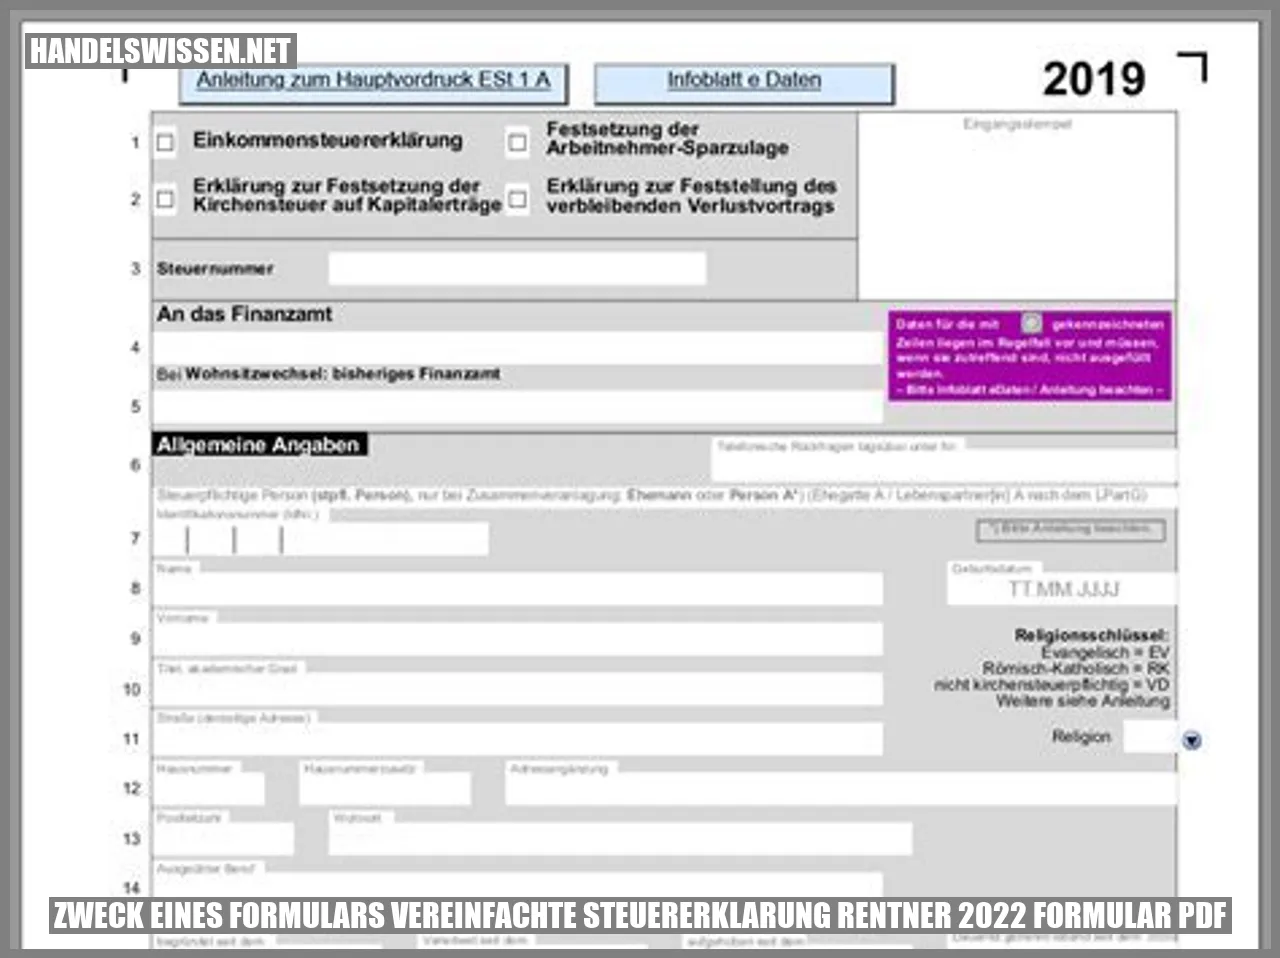 Zweck eines Formulars vereinfachte steuererklarung rentner 2022 formular pdf